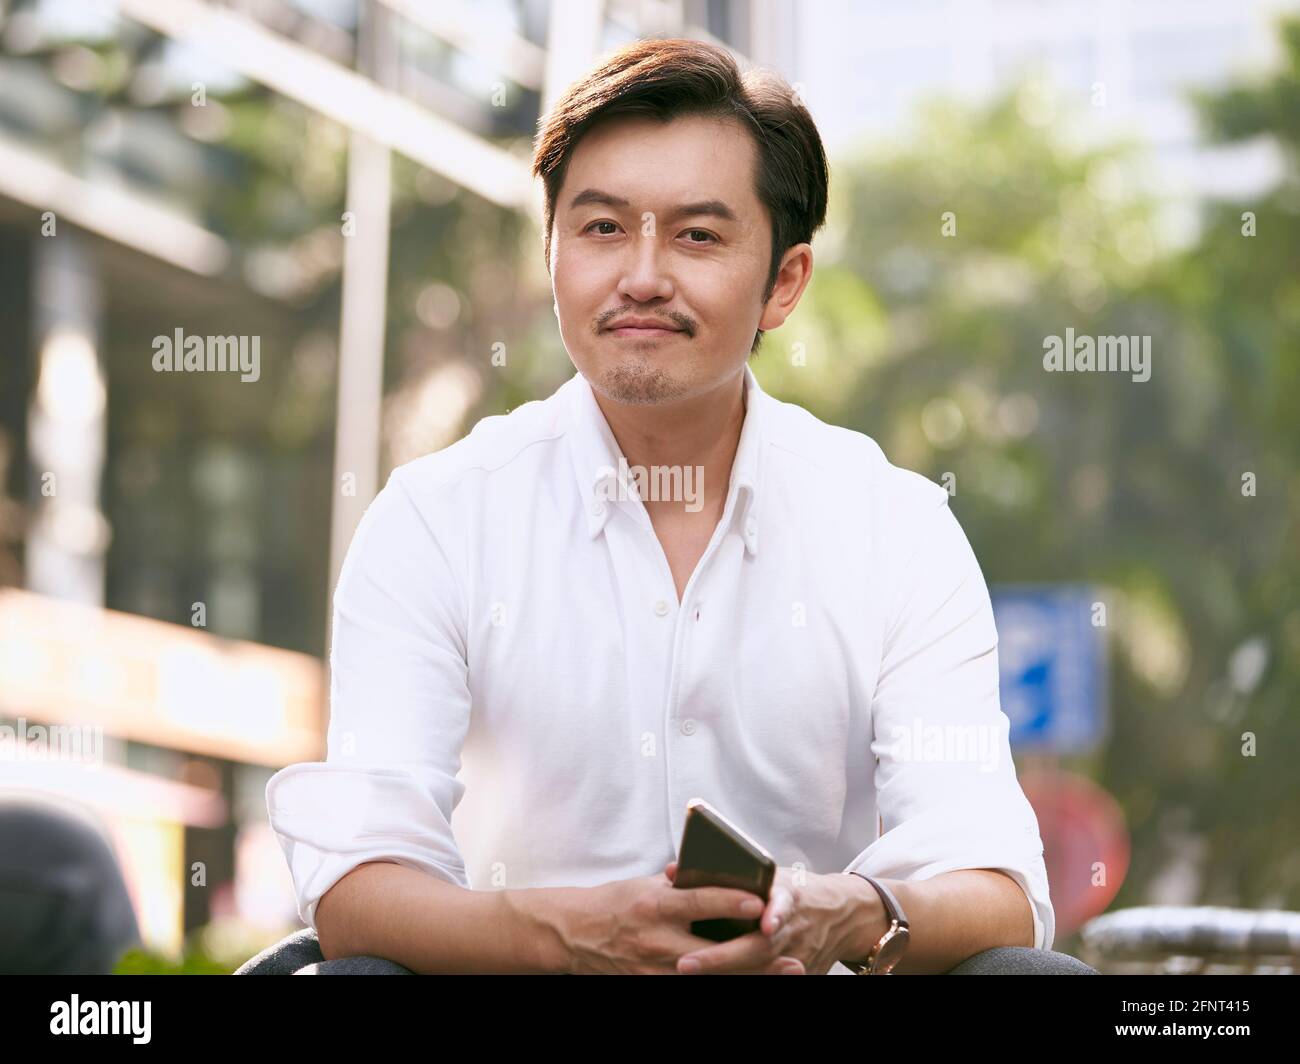 portrait en extérieur d'un homme d'affaires asiatique prospère qui regarde l'appareil photo sourire Banque D'Images